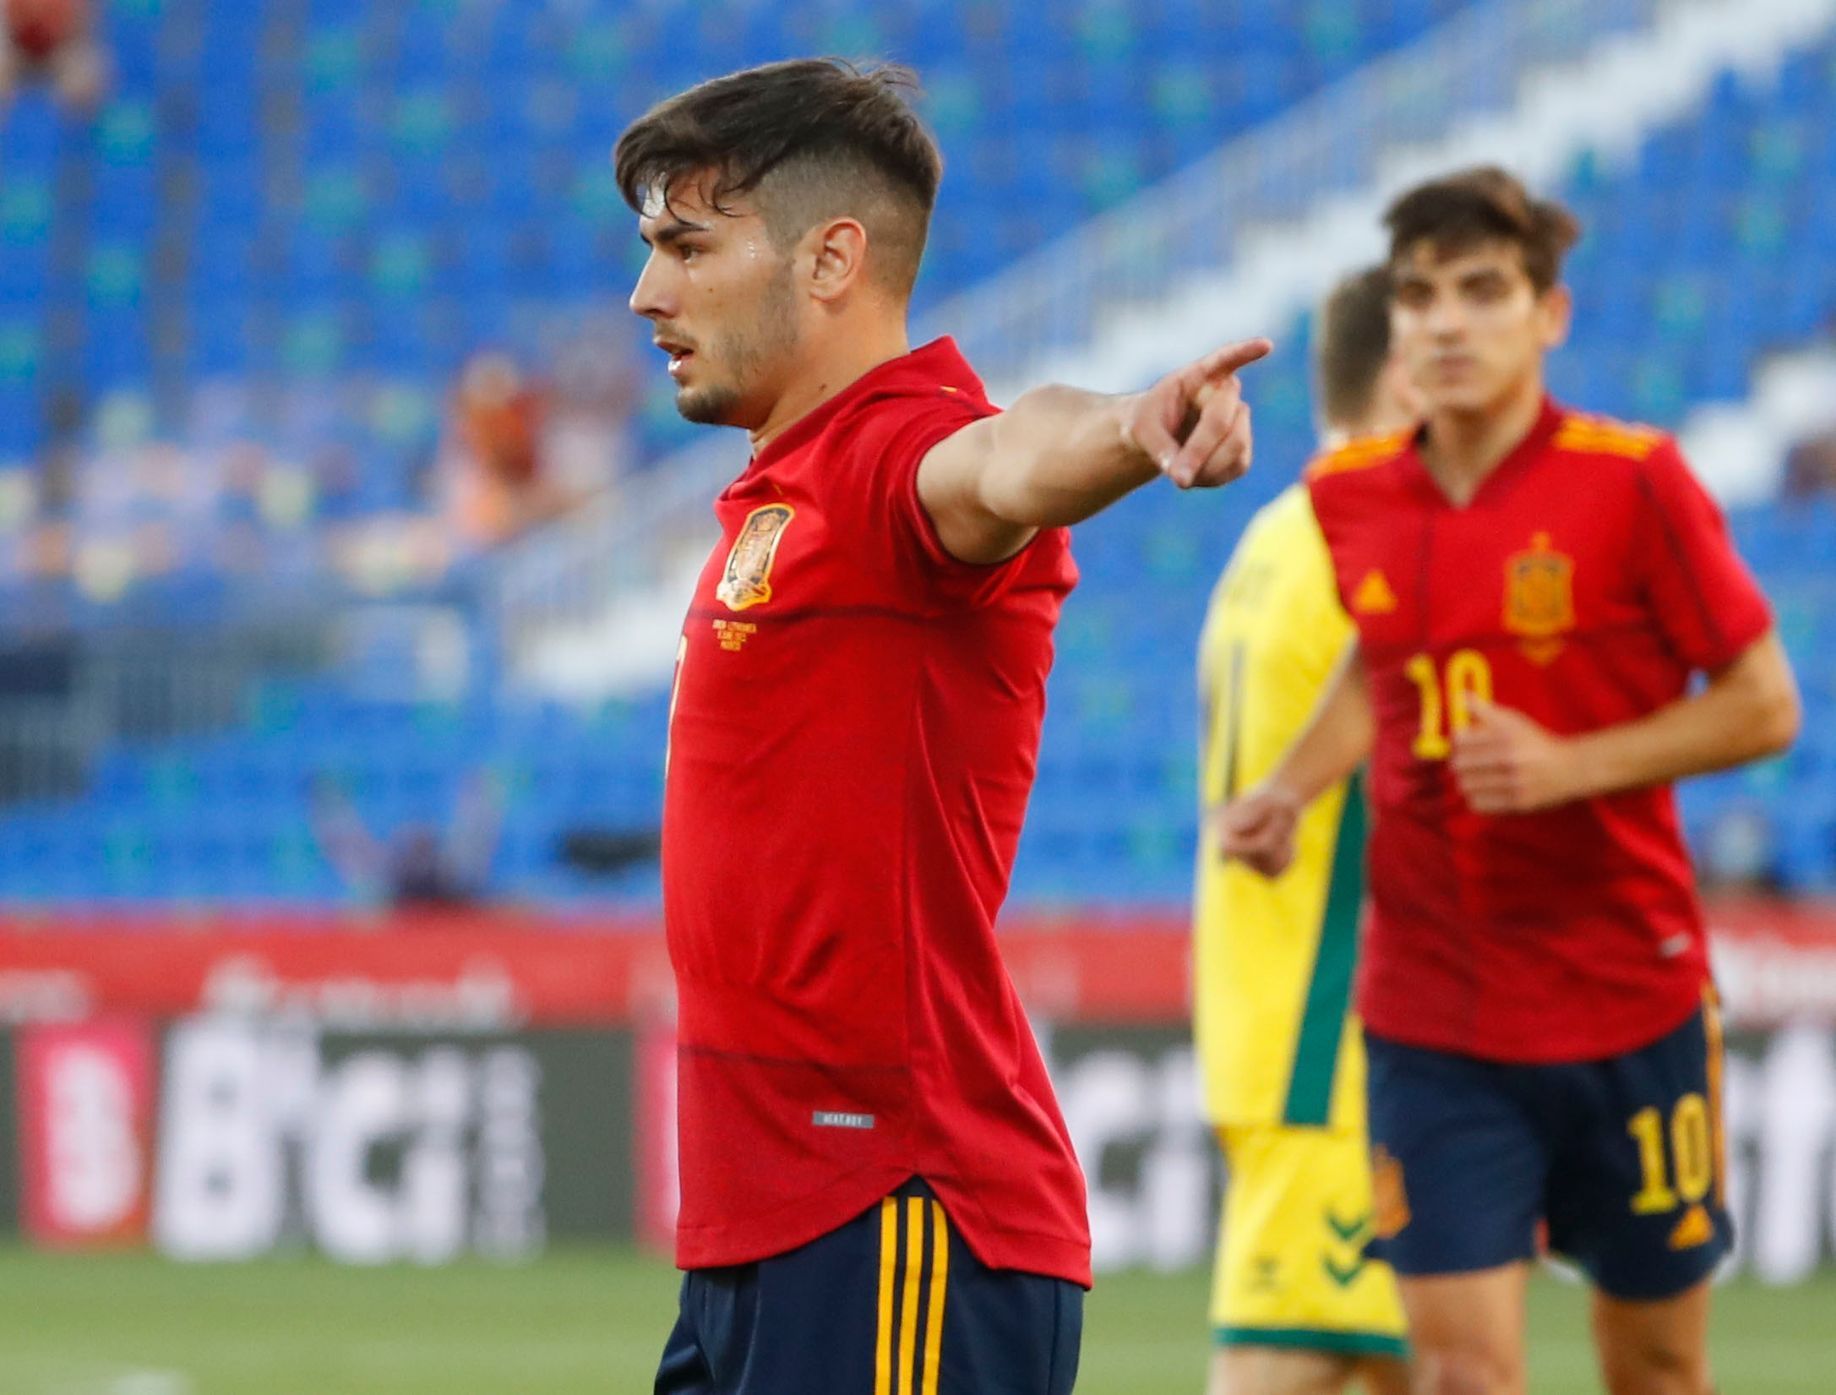 Brahim Díaz slaví gól v zápase Španělsko - Litva